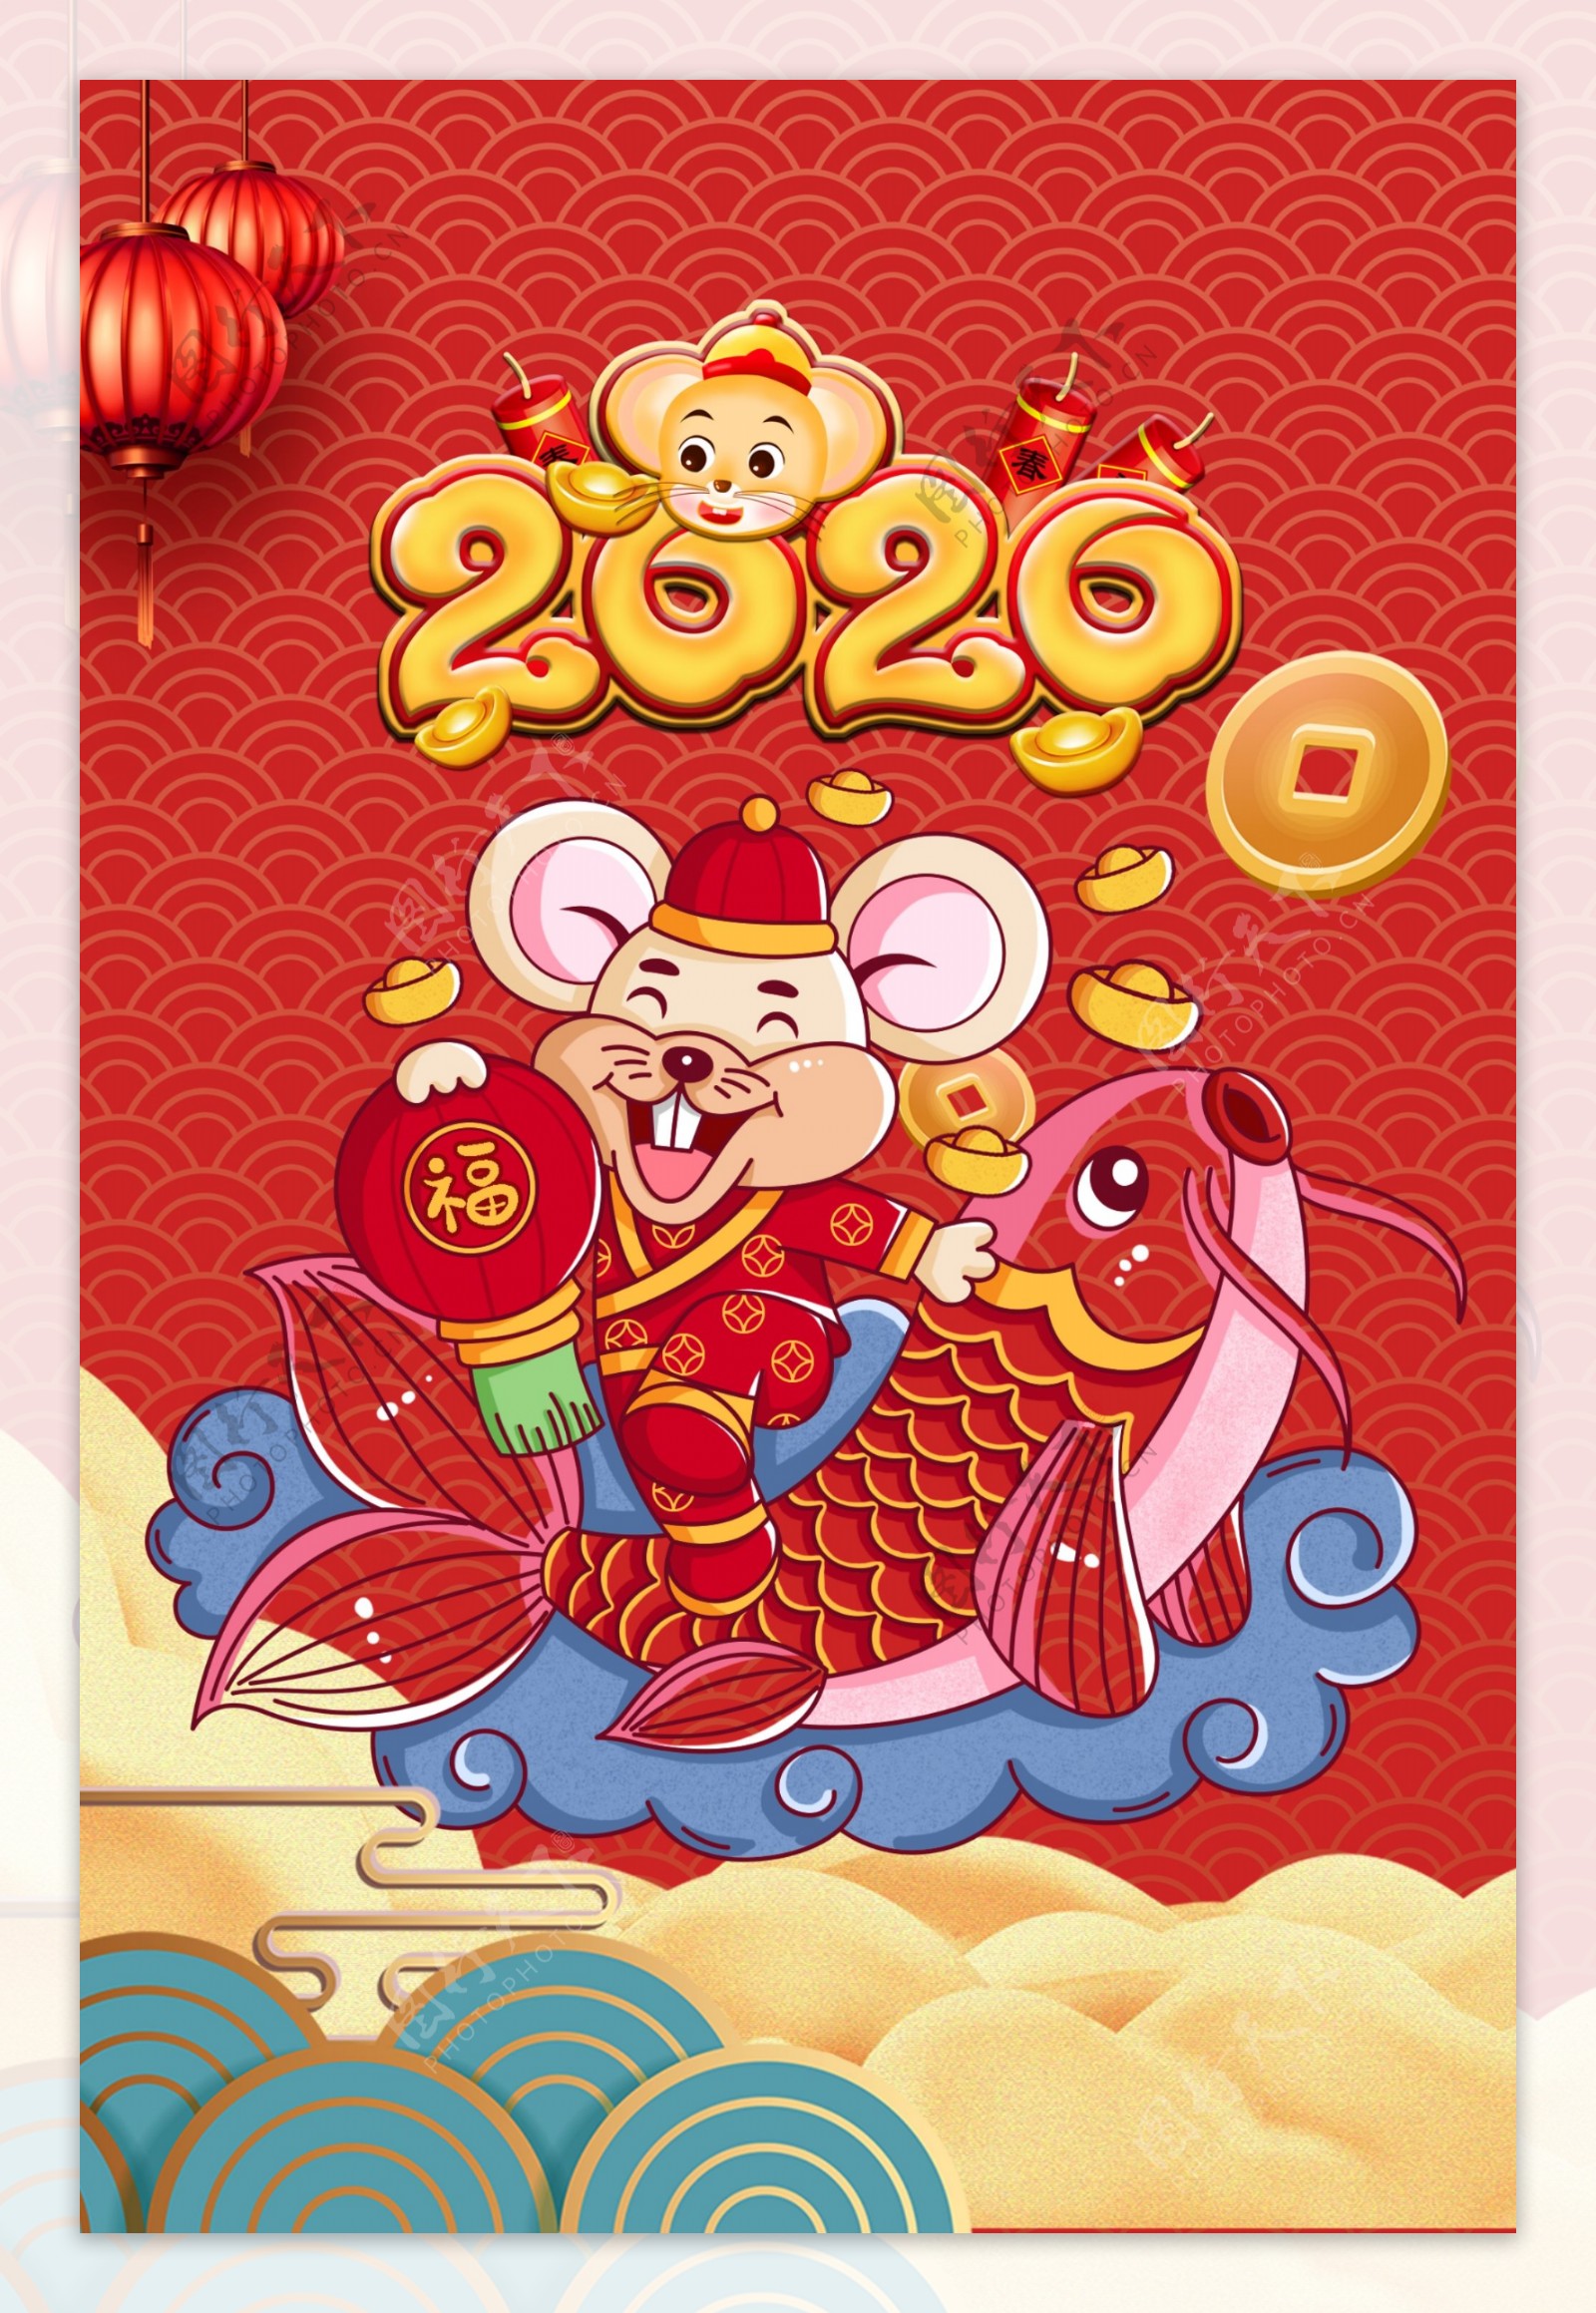 2020吉祥如意中国春节广告设